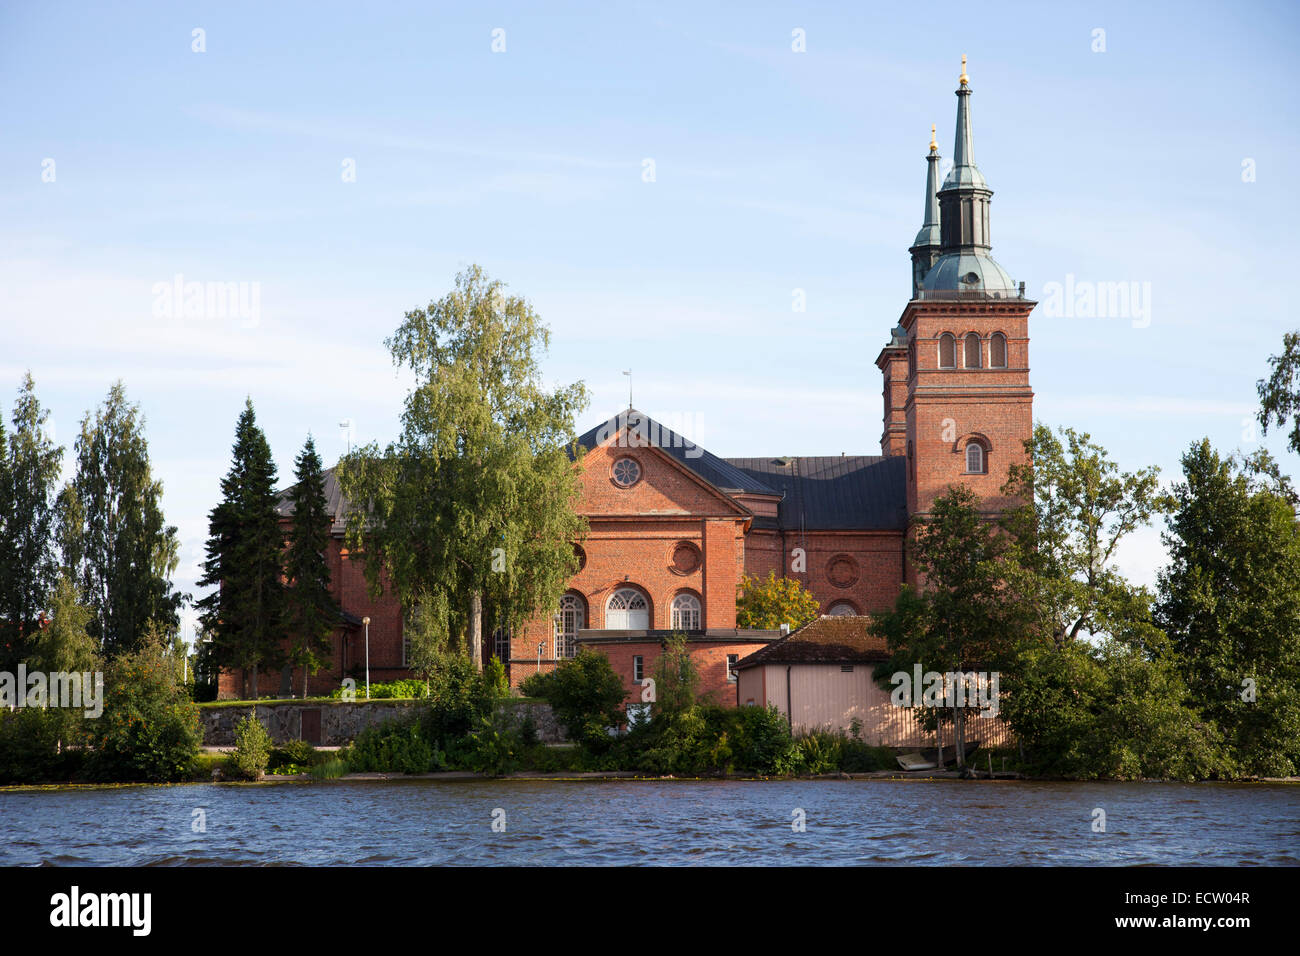 tyrvaan church, tyrvaan kirkko, rautavesi lake, vammala village, finland, europe Stock Photo